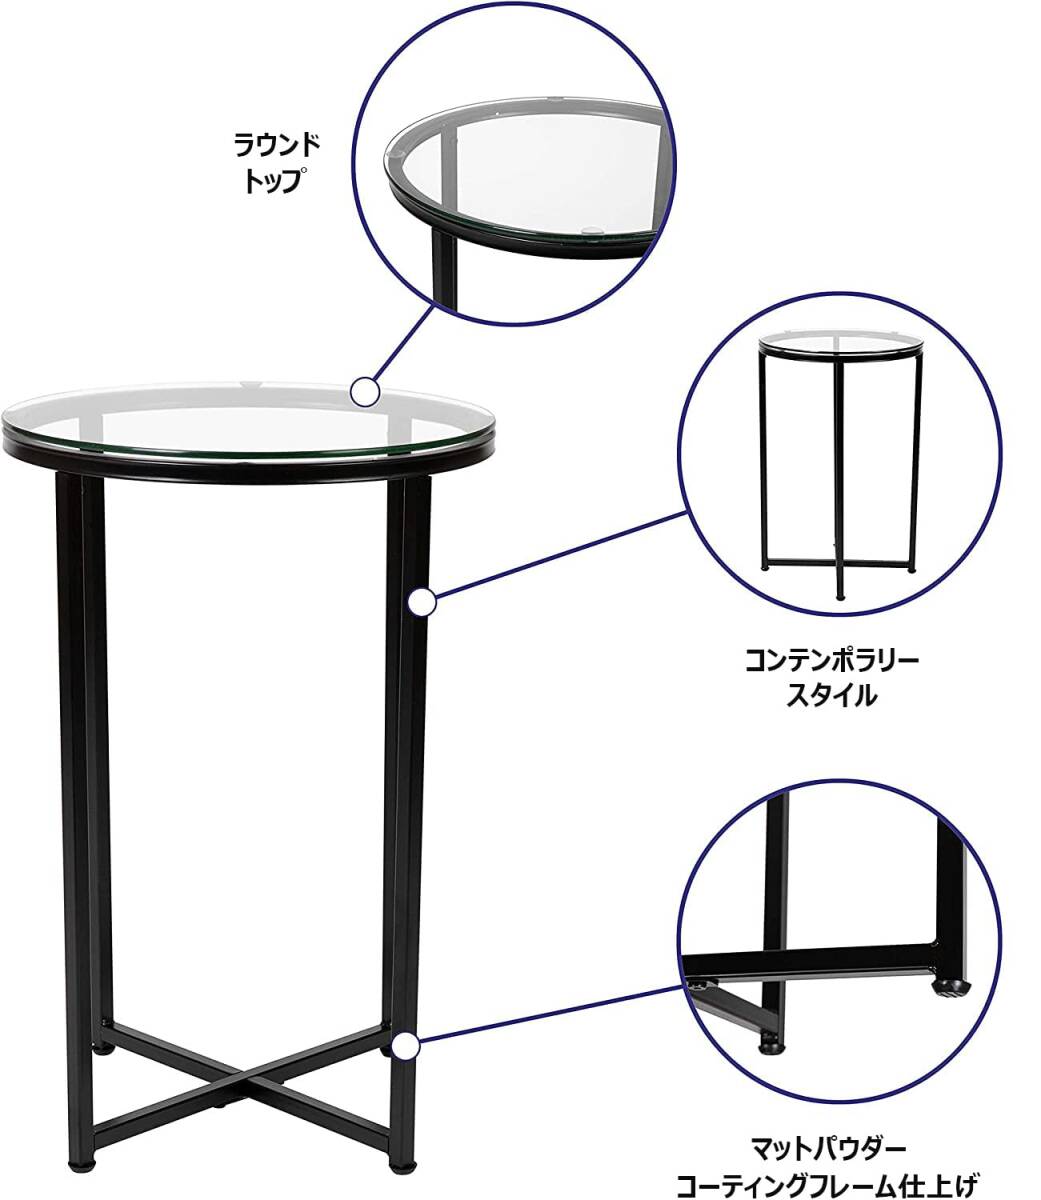 おすすめ モダンなデザイン サイドテーブル 強化ガラス 耐久性抜群 コンパクトデ